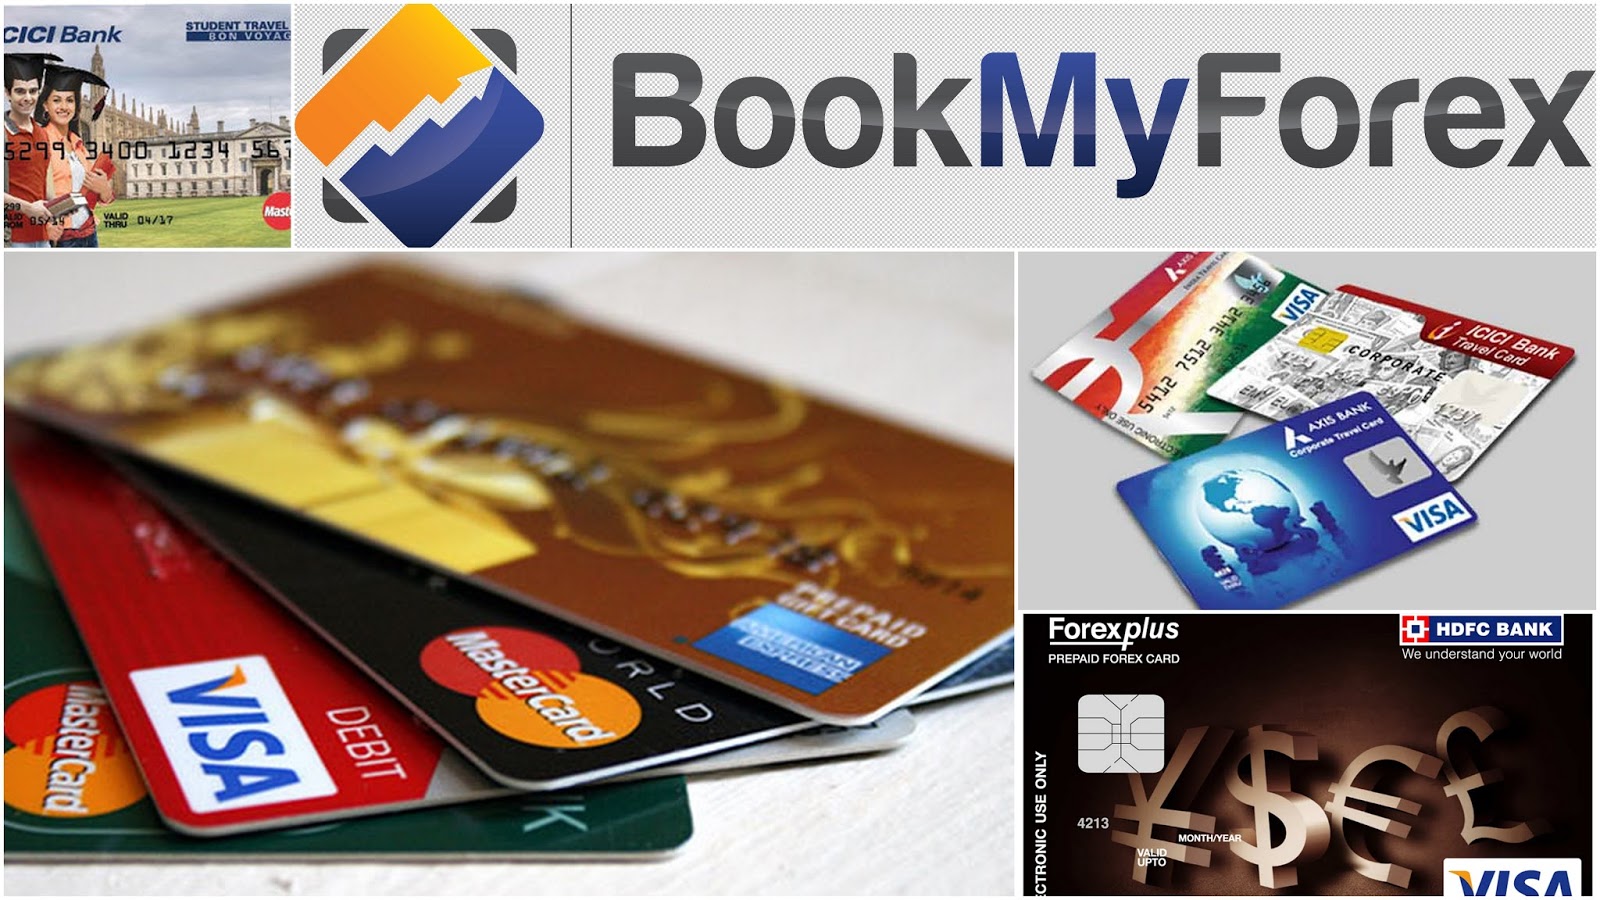 prepaid forex card hdfc bank